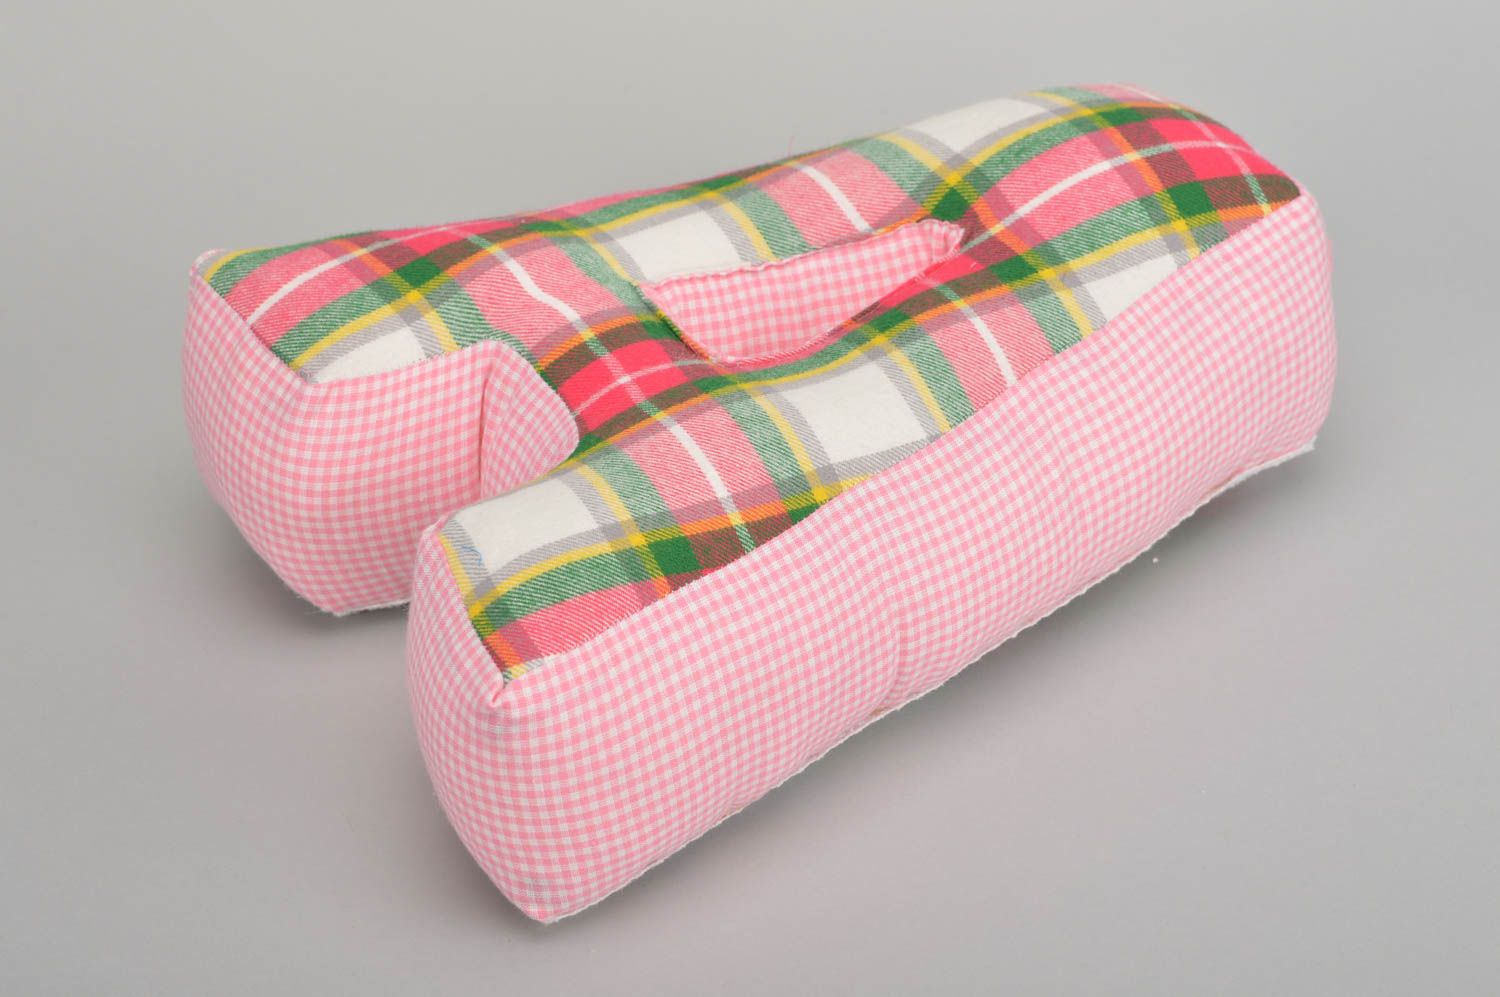 Интерьерная подушка в виде буквы А из хлопка ручной работы розовая в клеточку фото 5